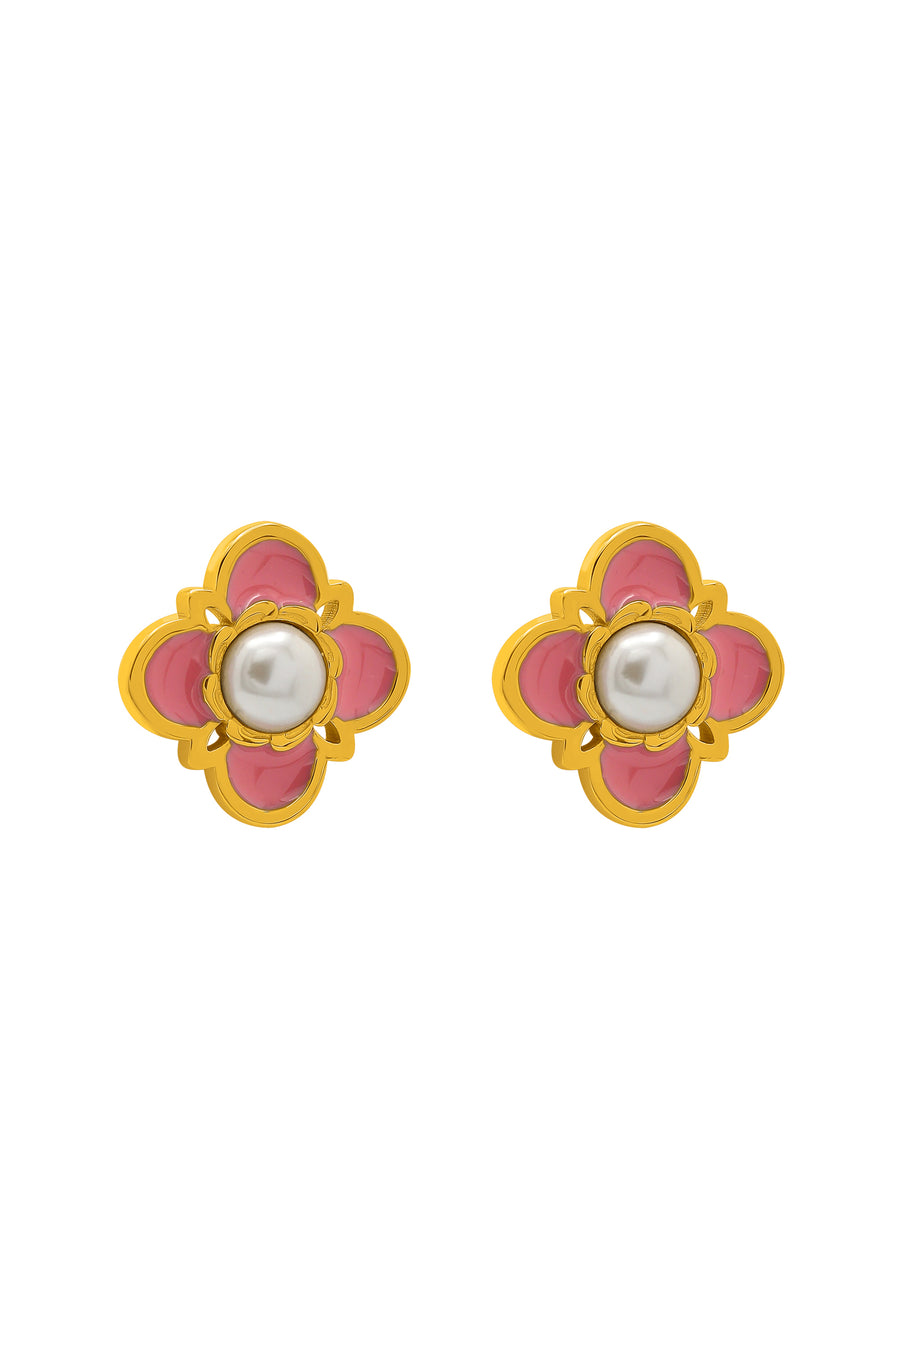 Tasha's Pink Enamel Stud Earring Set